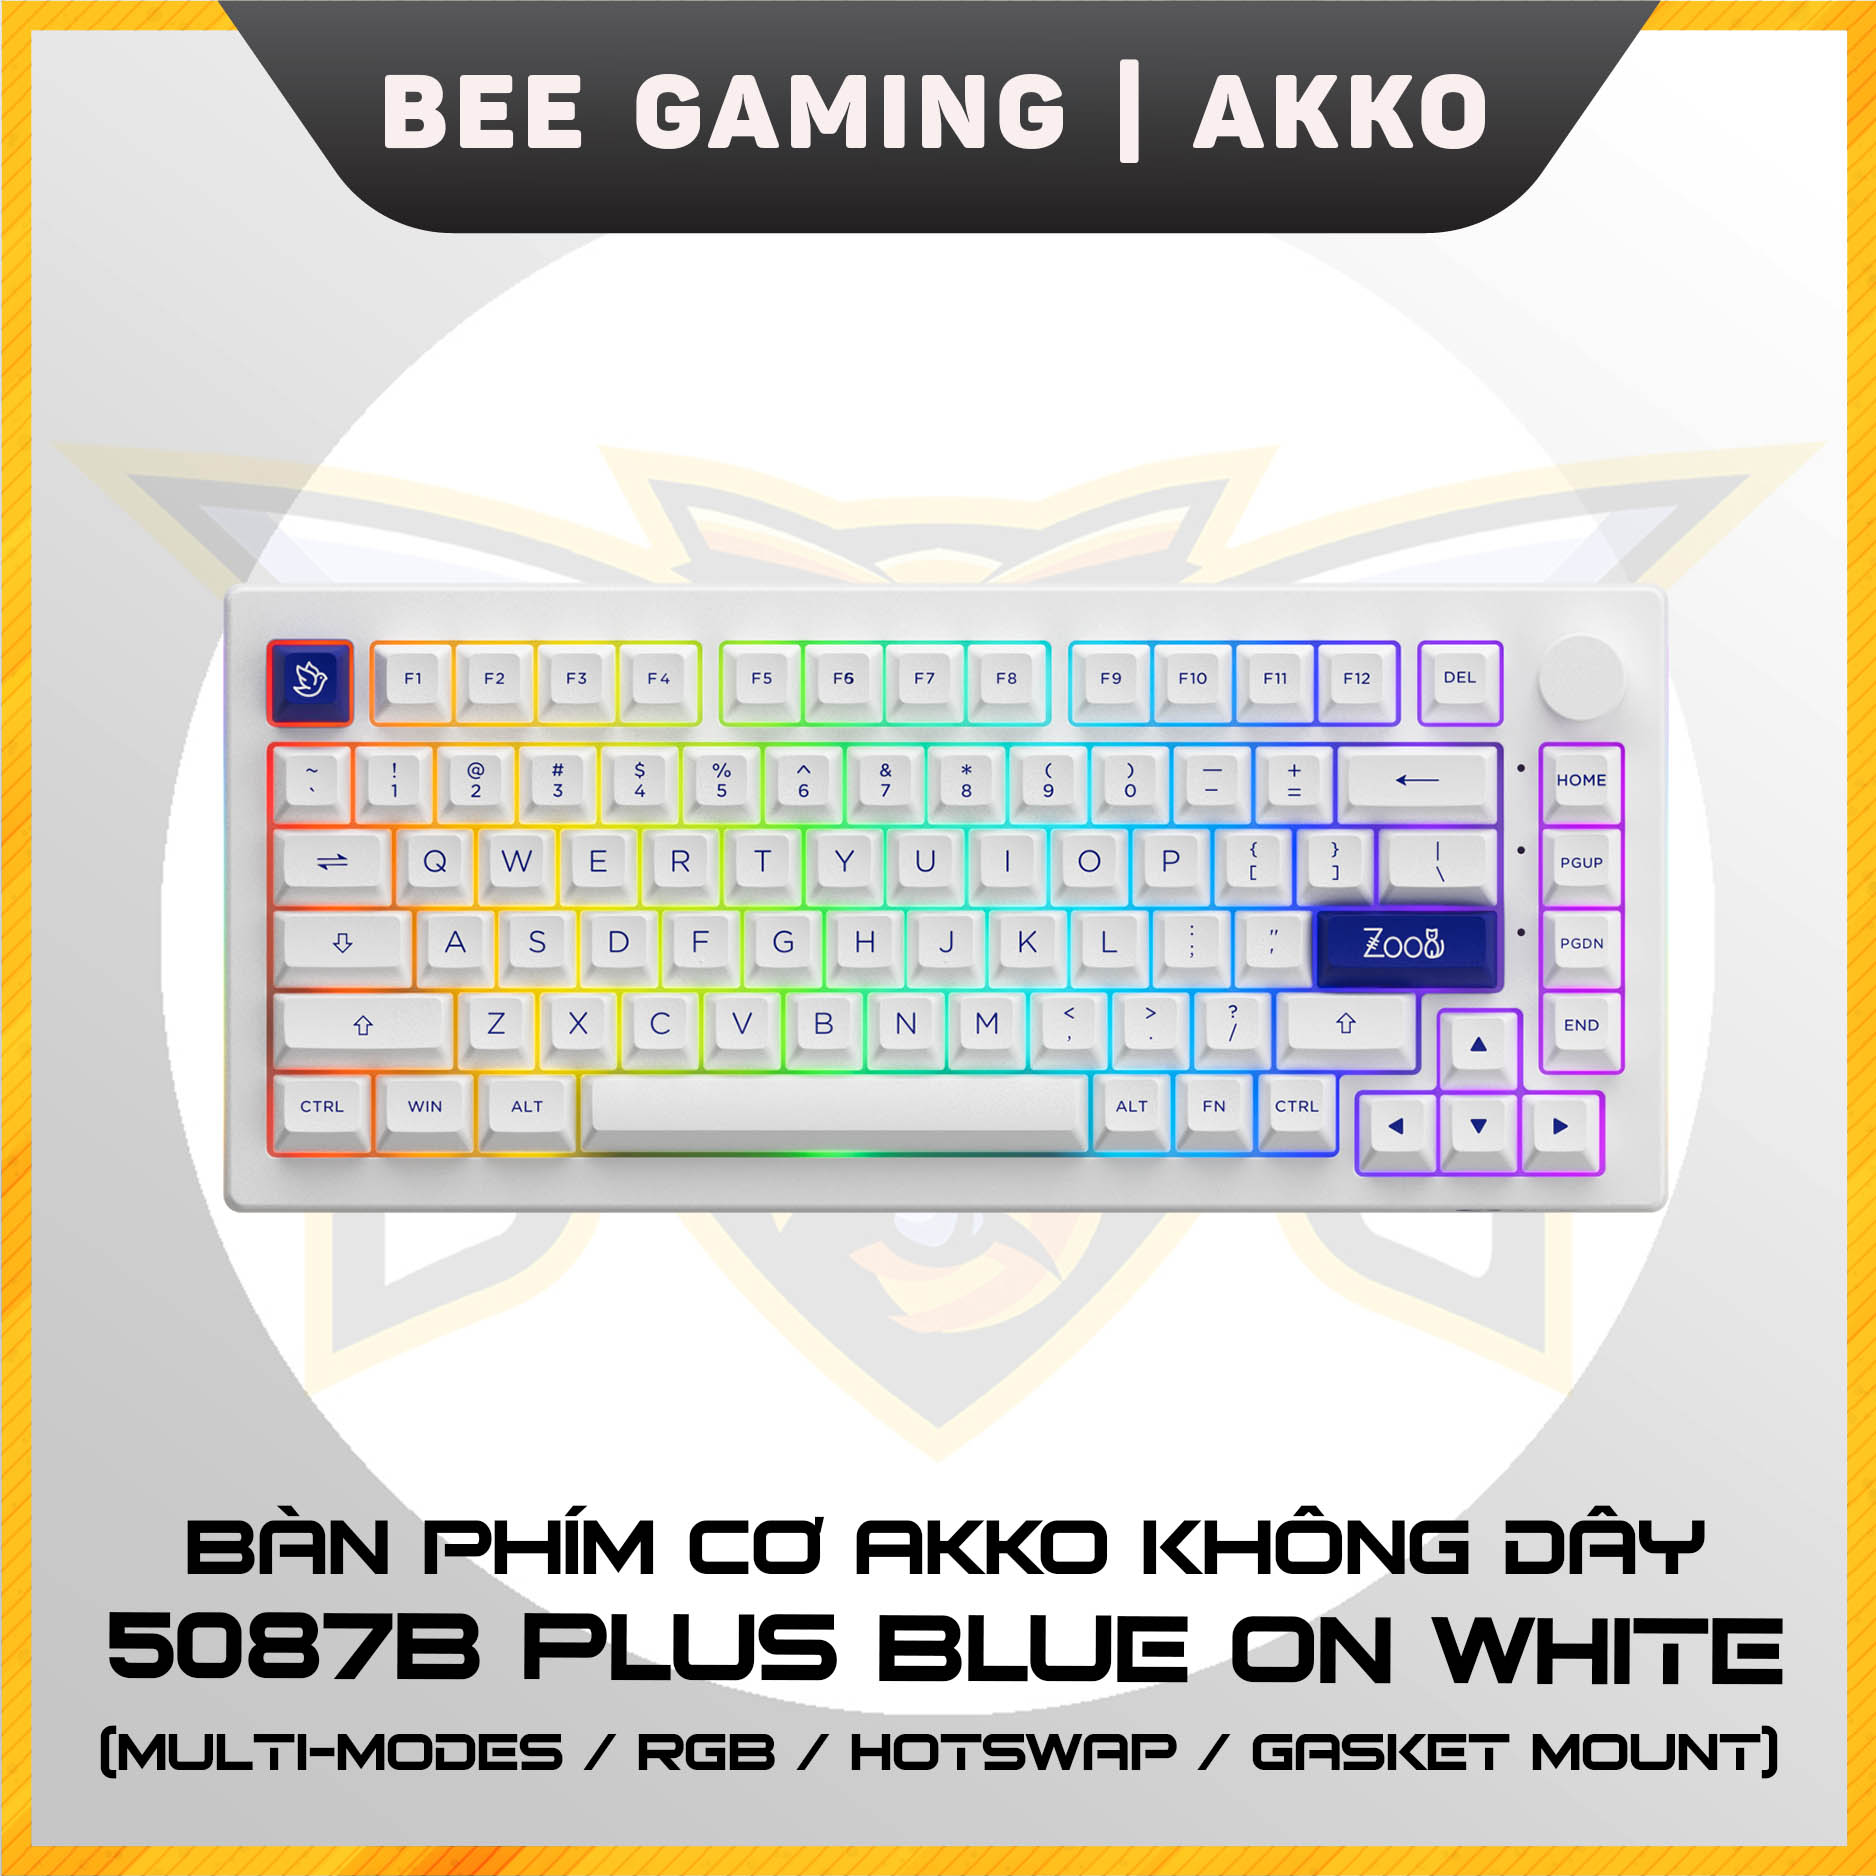 Bàn phím cơ AKKO 5075B Plus Blue on White (Multi-modes / RGB / Hotswap / Gasket mount) - Hàng chính hãng lỗi 1 đổi 1 trong 12 tháng